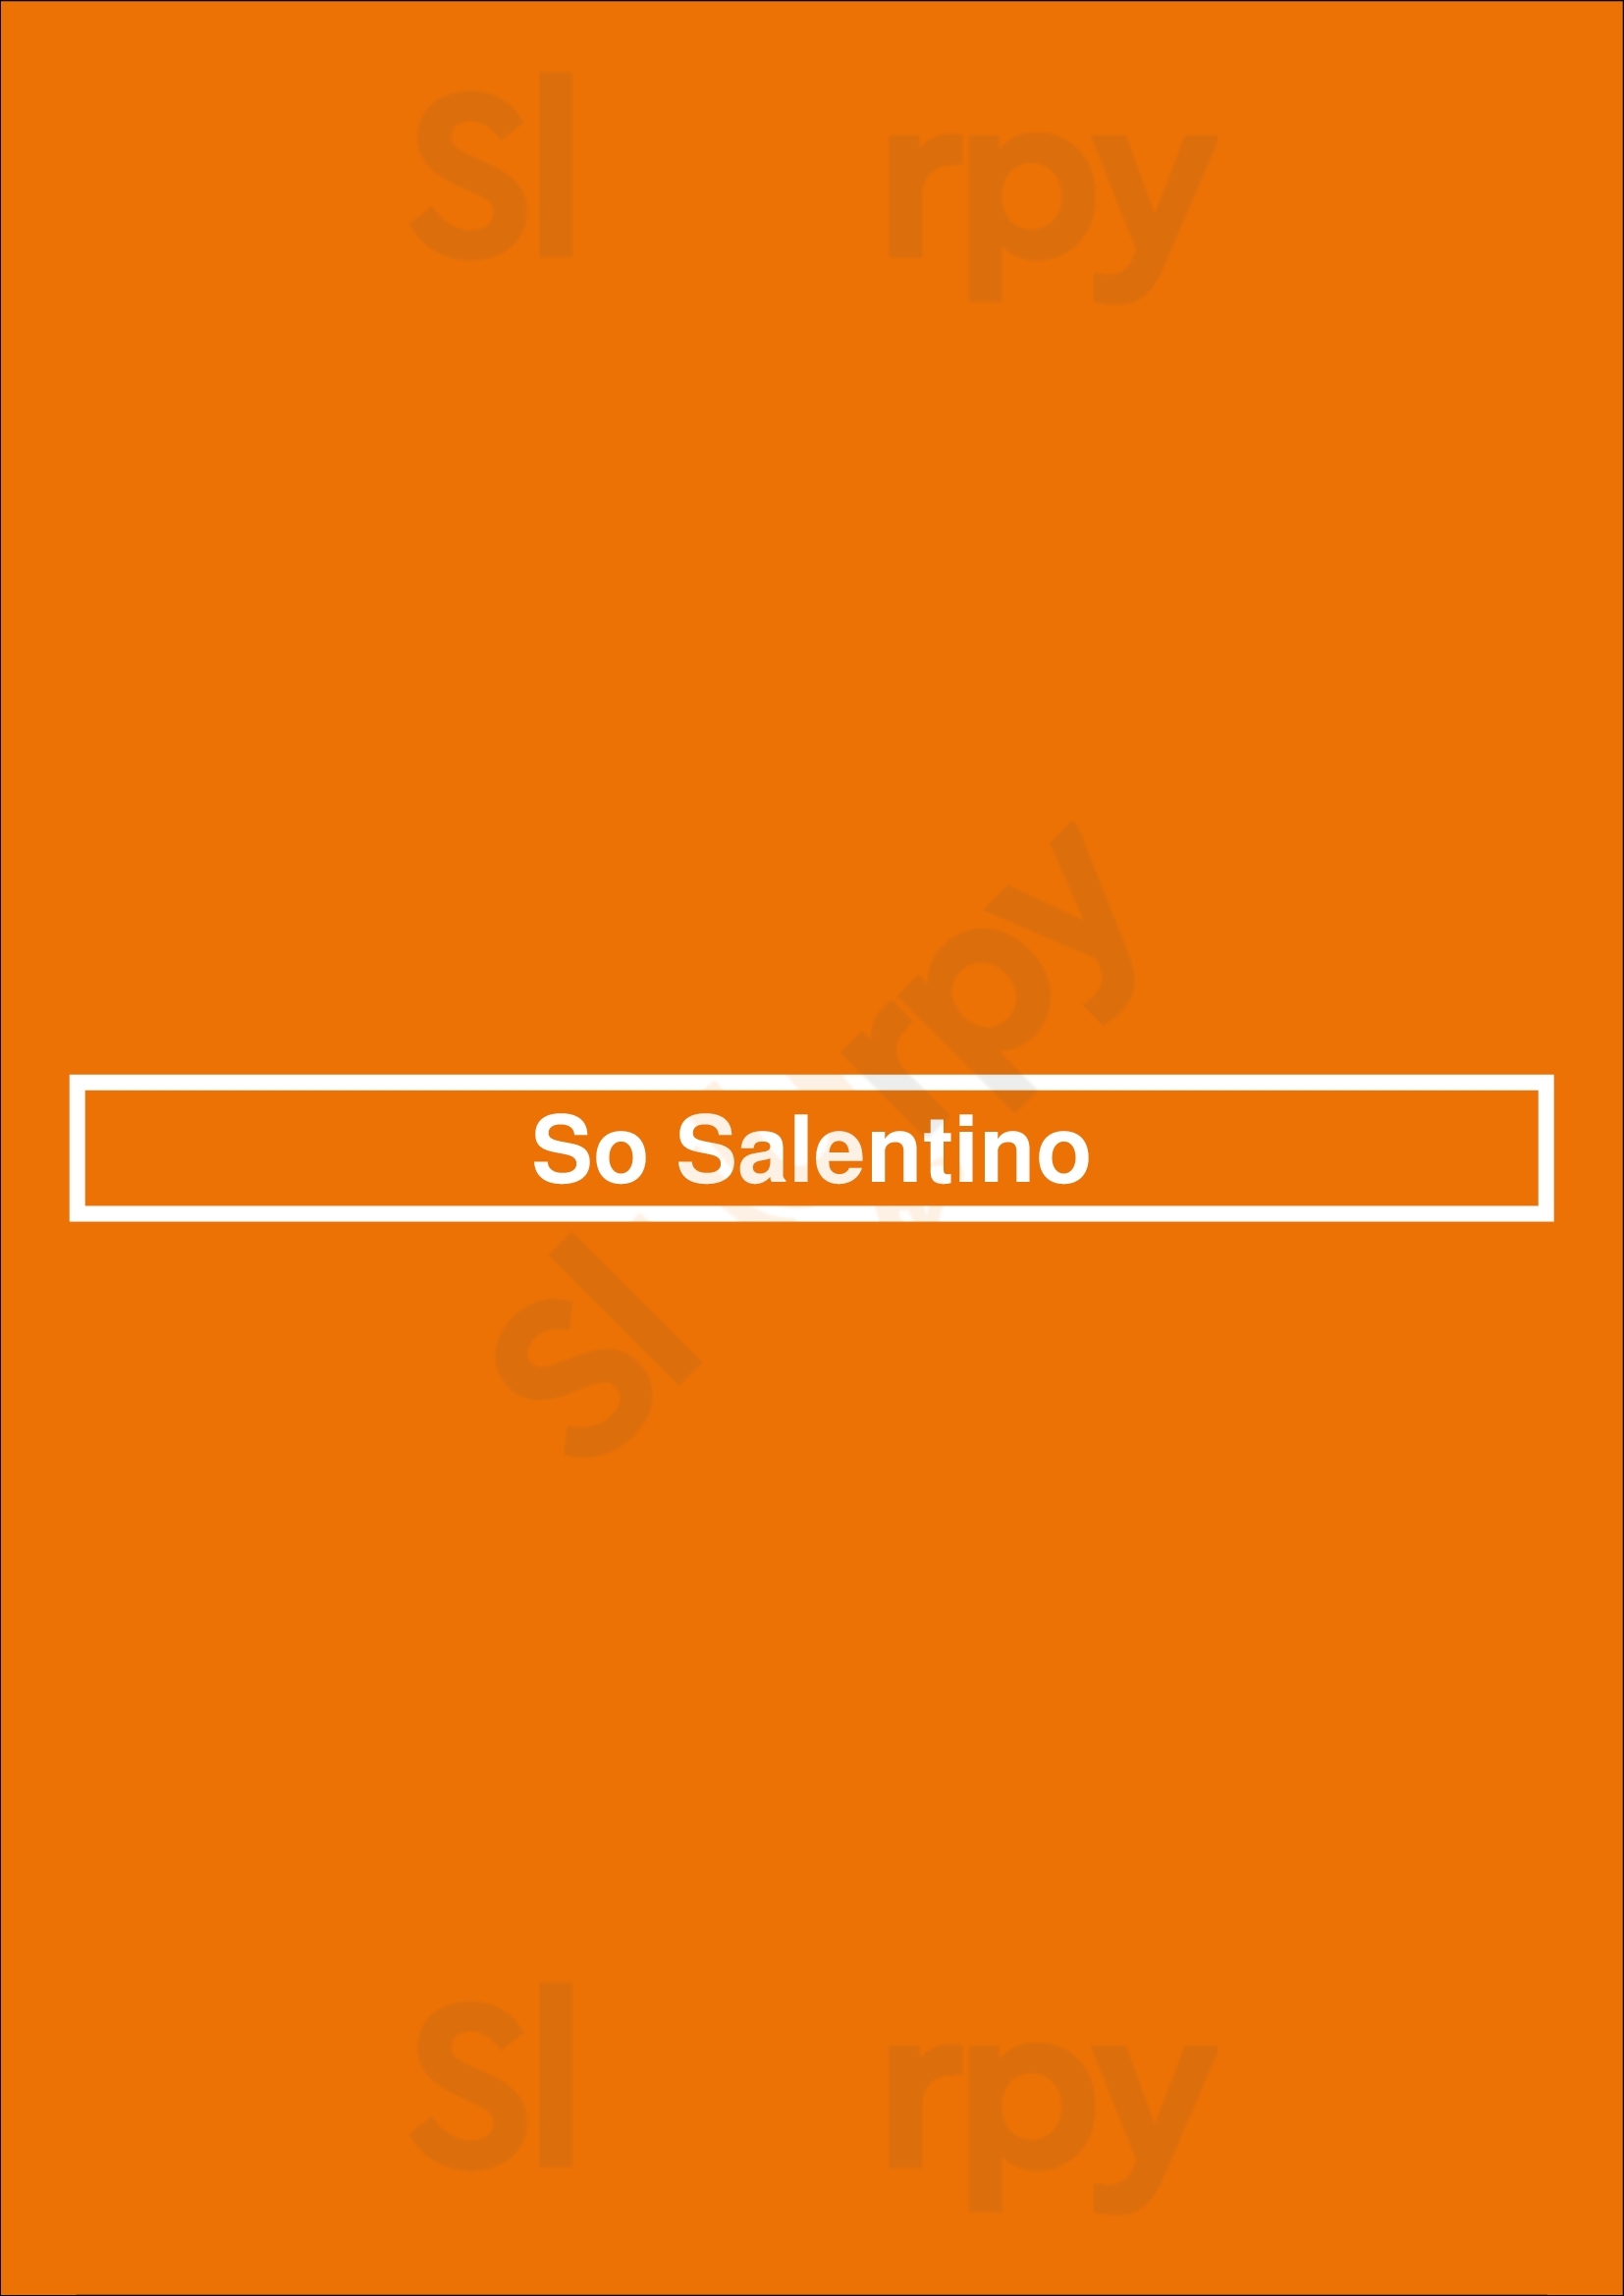 So Salentino Nanterre Menu - 1